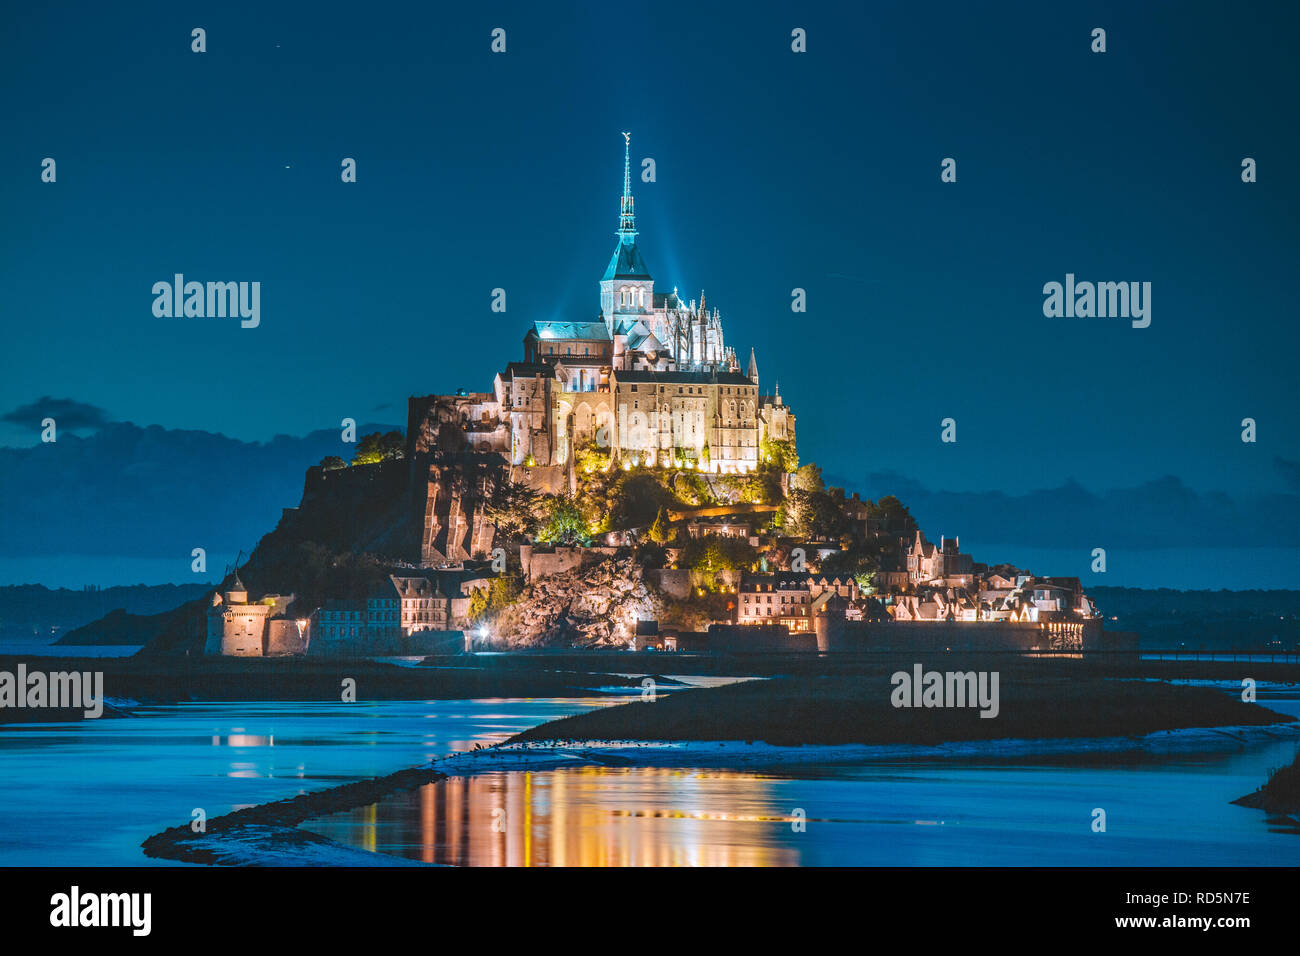 Klassische Ansicht des berühmten Le Mont Saint-Michel-Gezeiten-Insel in schöne Dämmerung während der blauen Stunde bei Dämmerung, Normandie, Nordfrankreich Stockfoto